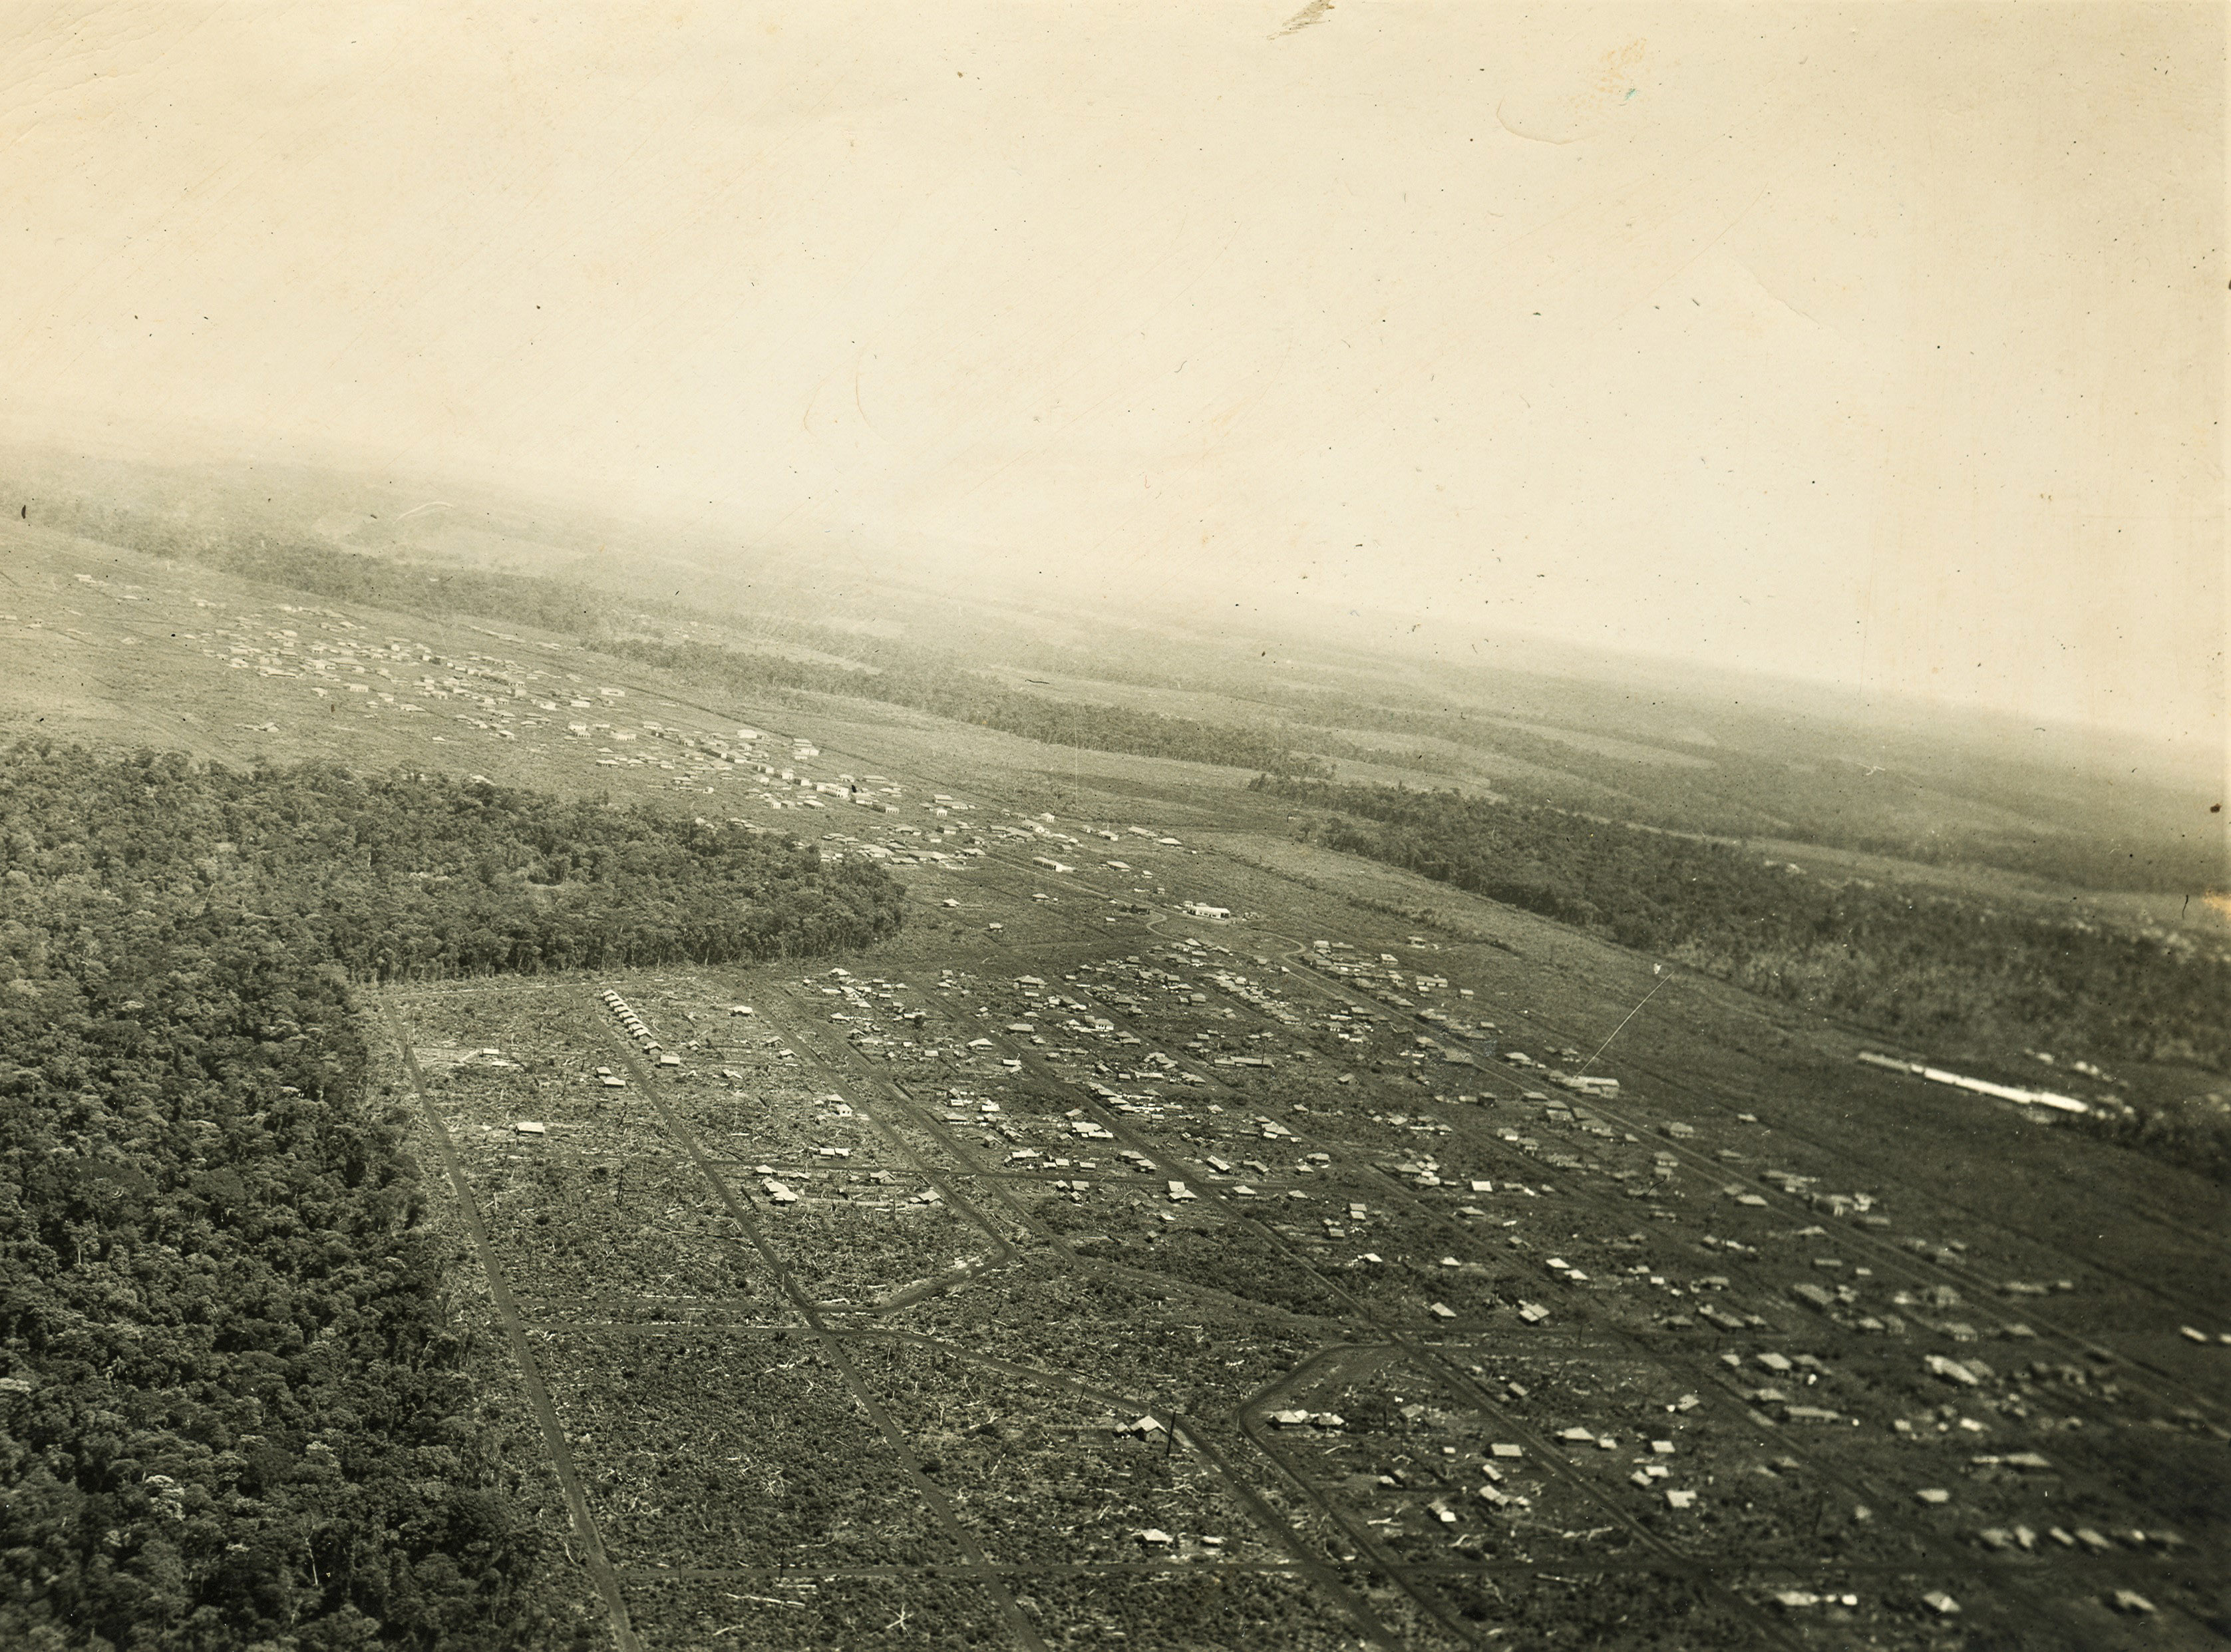 Vista aérea da Vila Operária - Final dos anos 1940